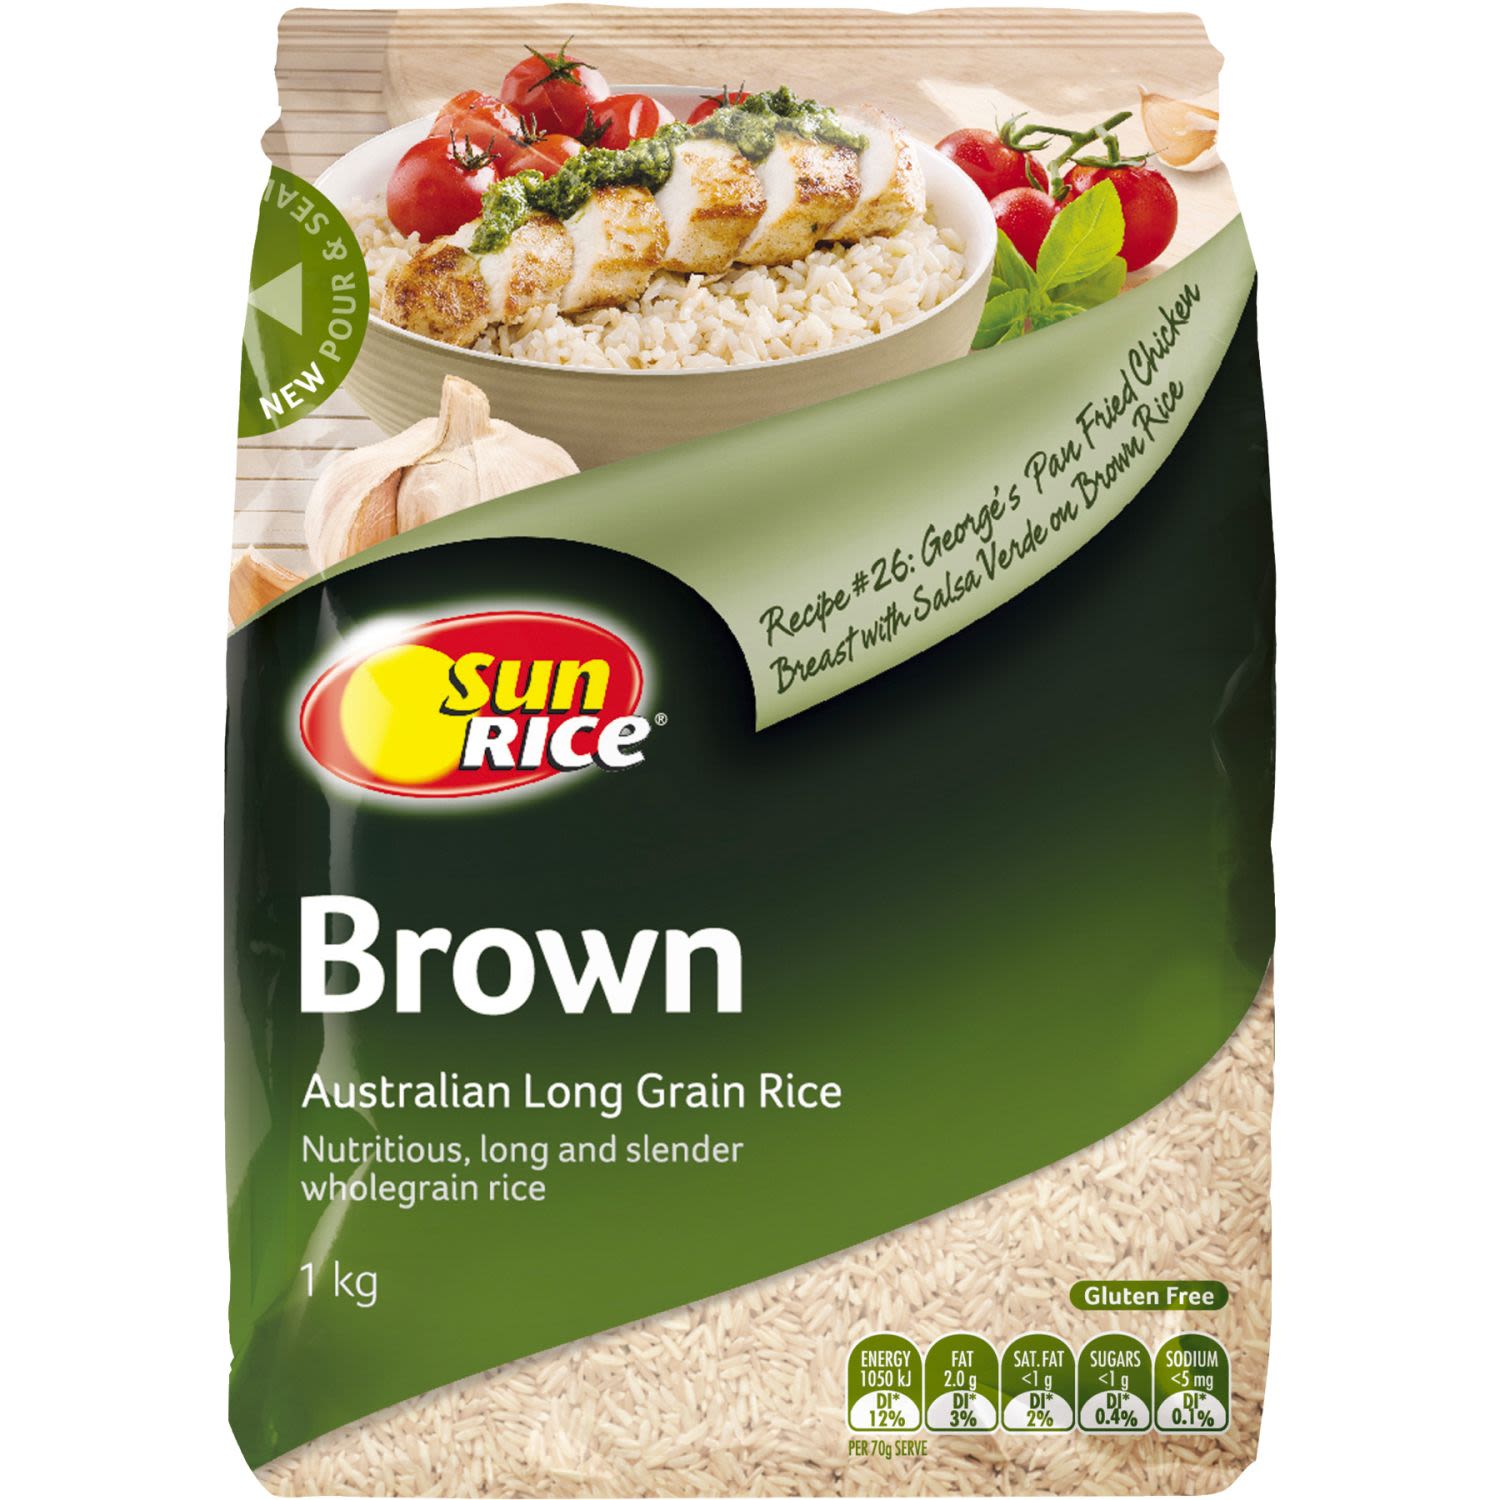 SunRice Long Grain Brown Rice, 1 Kilogram